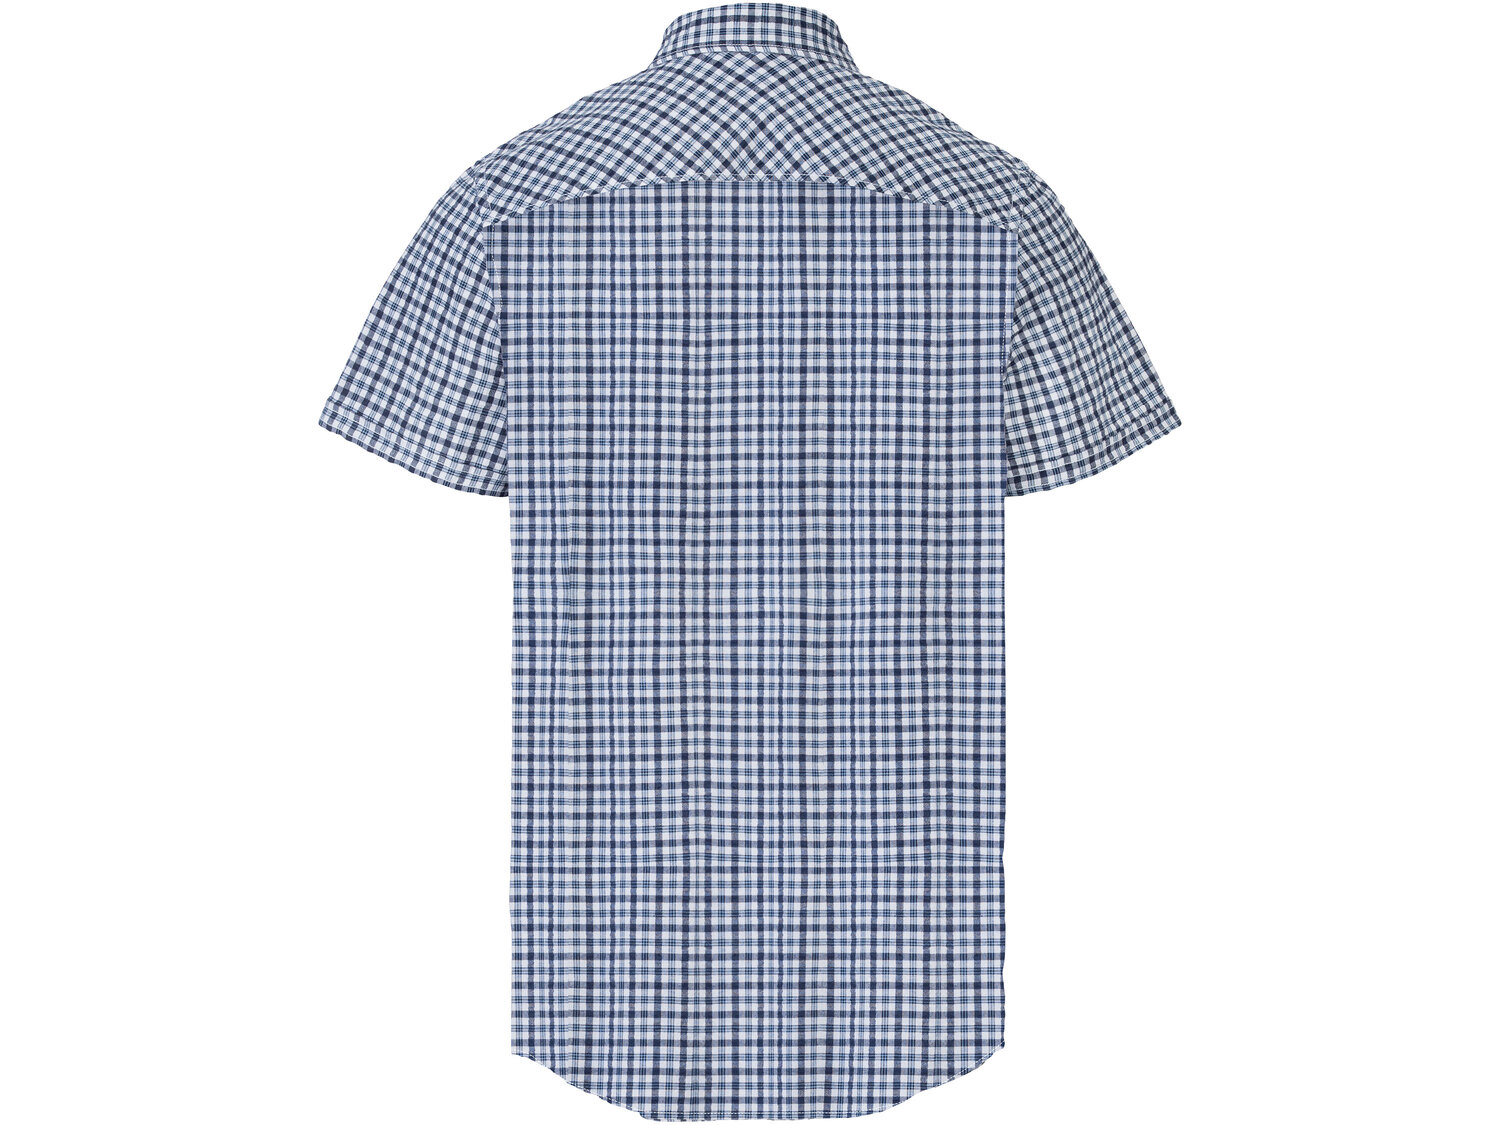 Koszula męska z bawełny , cena 34,99 PLN 
- rozmiary: M-XL
- wygodna kieszeń
- ...